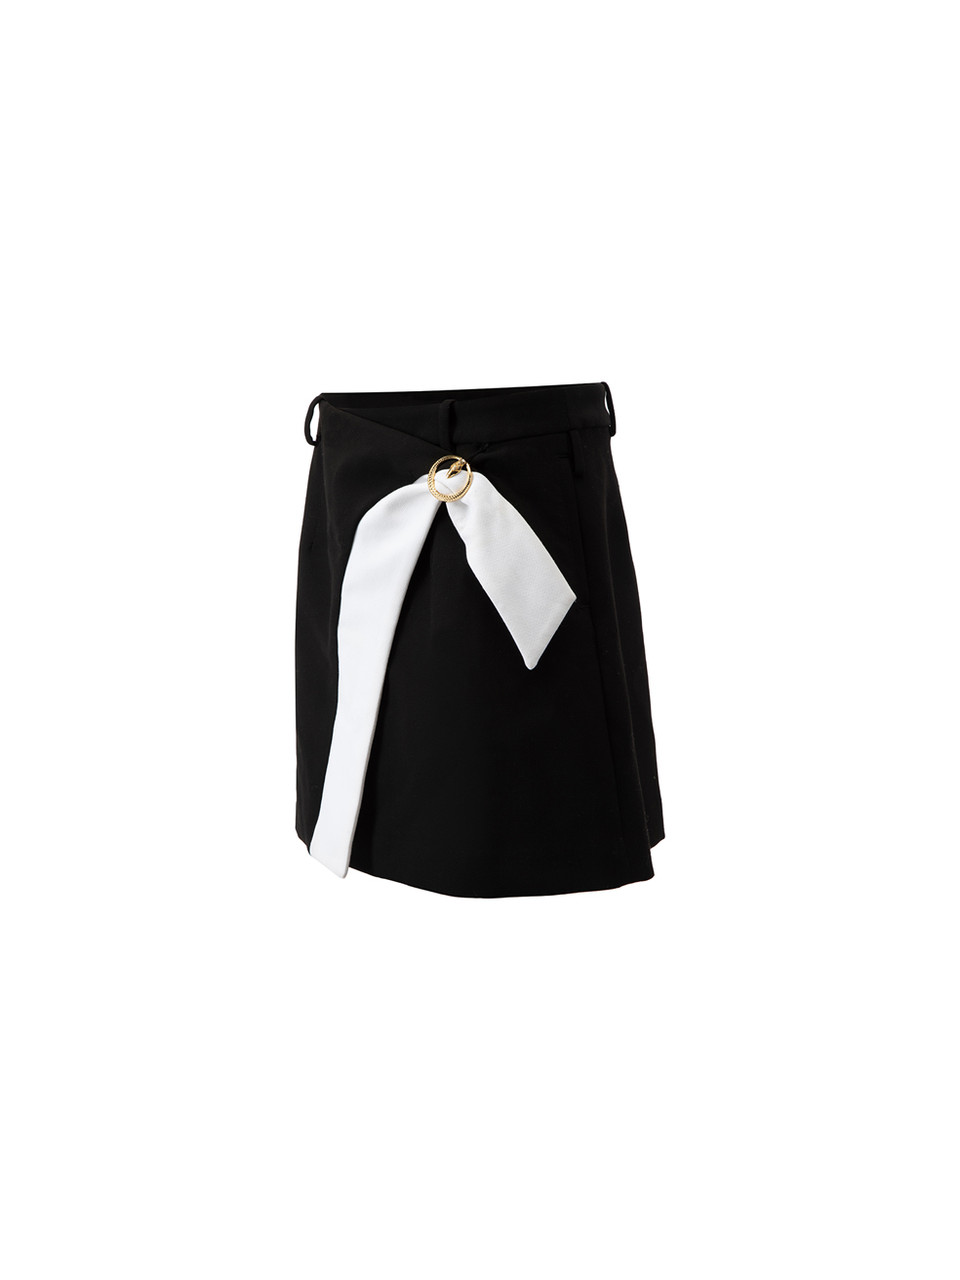 Class Roberto Cavalli Black Mini Skirt with White Bow Detail